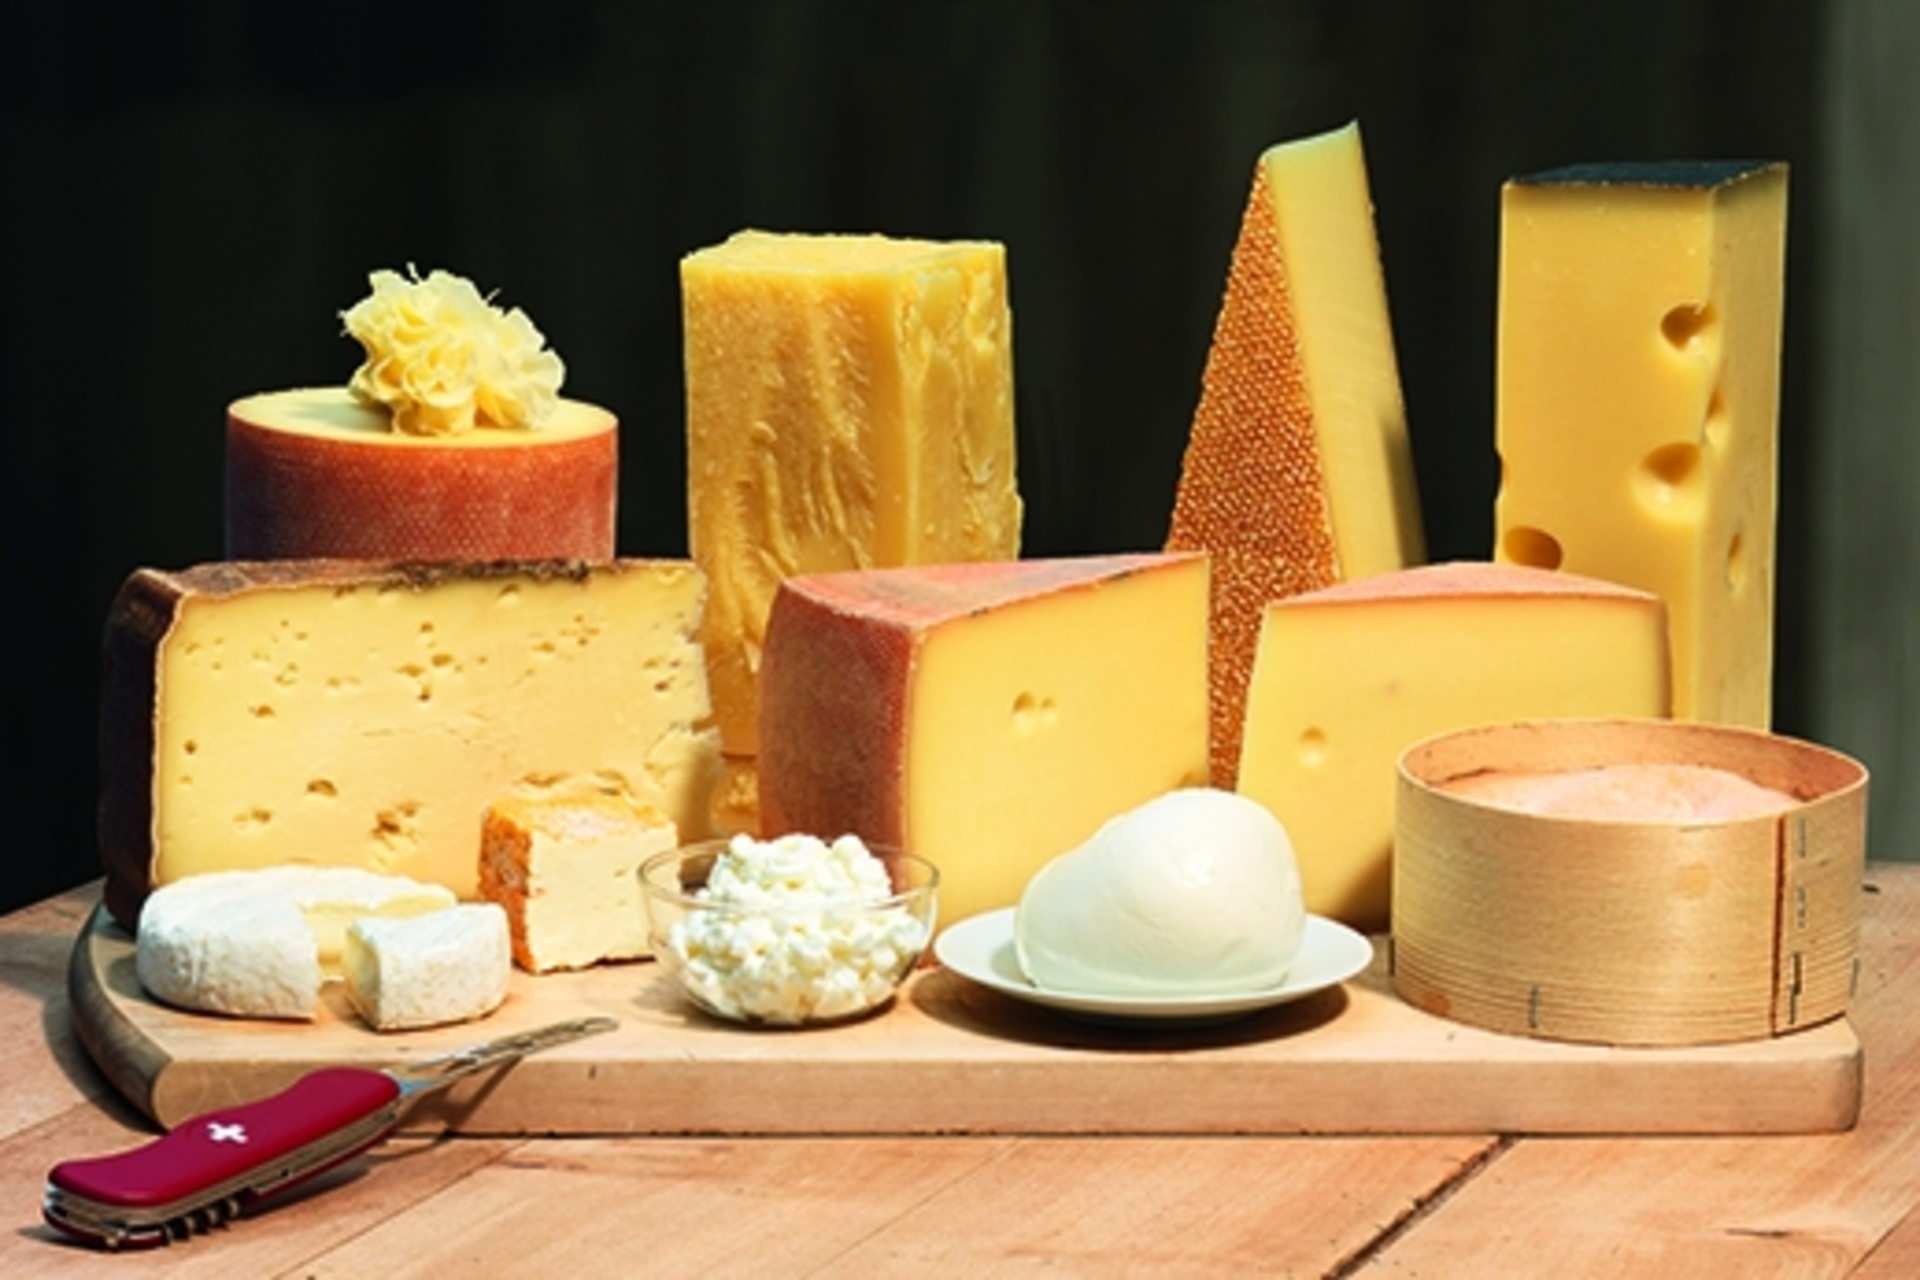 Formaggio: metà del latte prodotto in Svizzera viene trasformato in formaggio